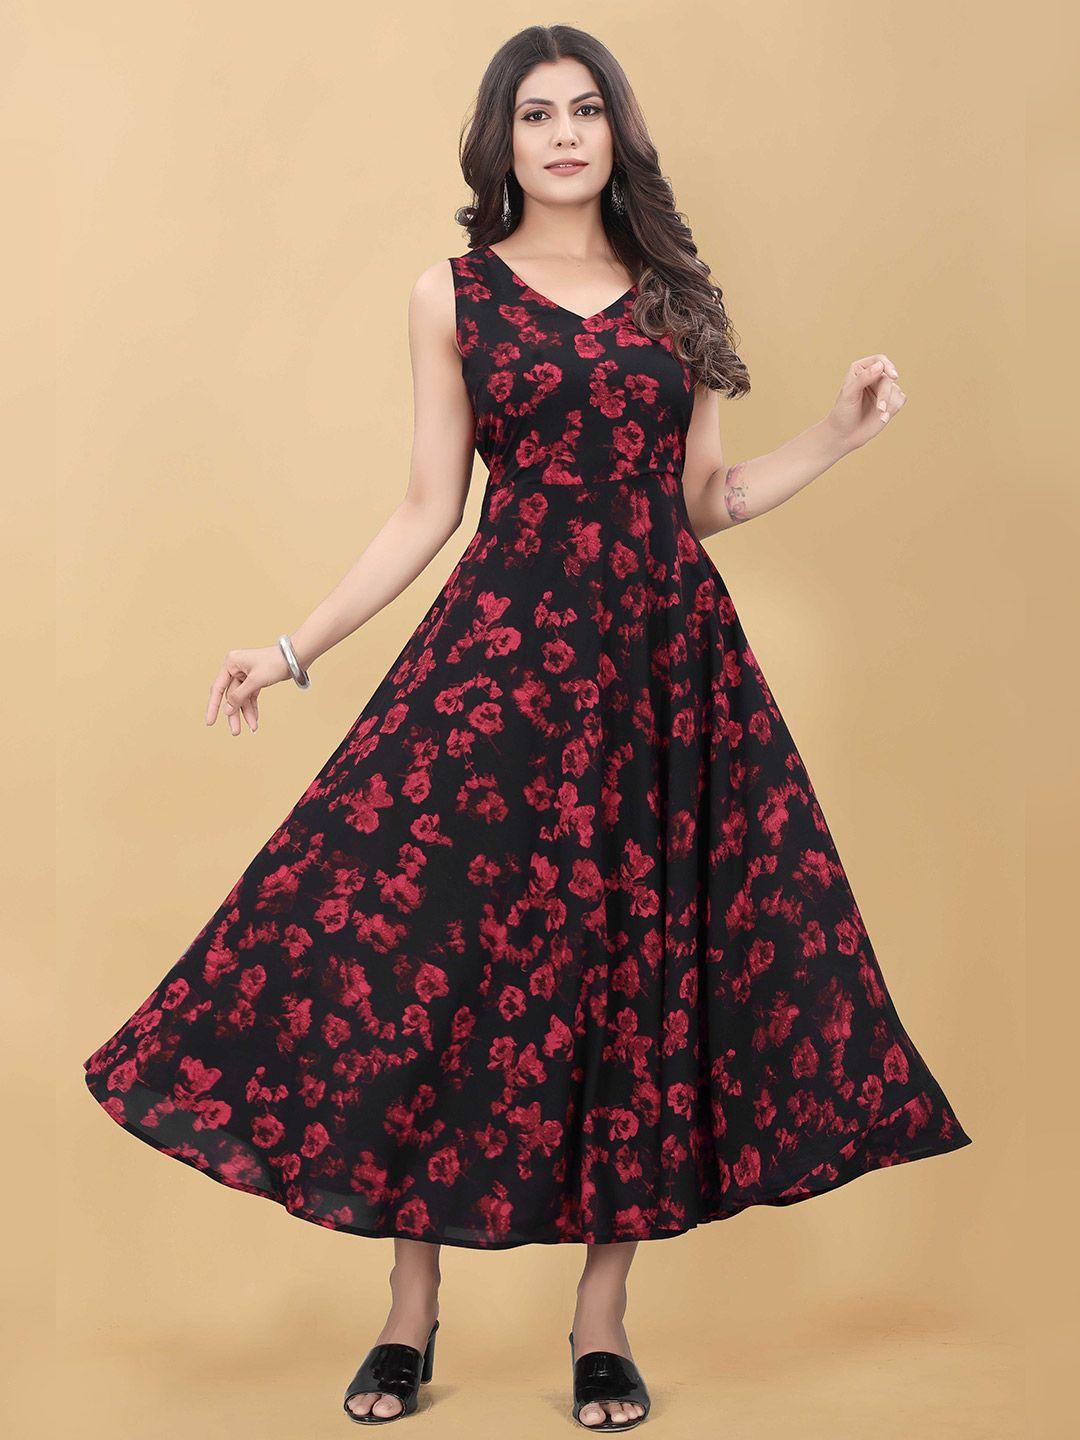 weavetech impex women black floral crepe maxi dress